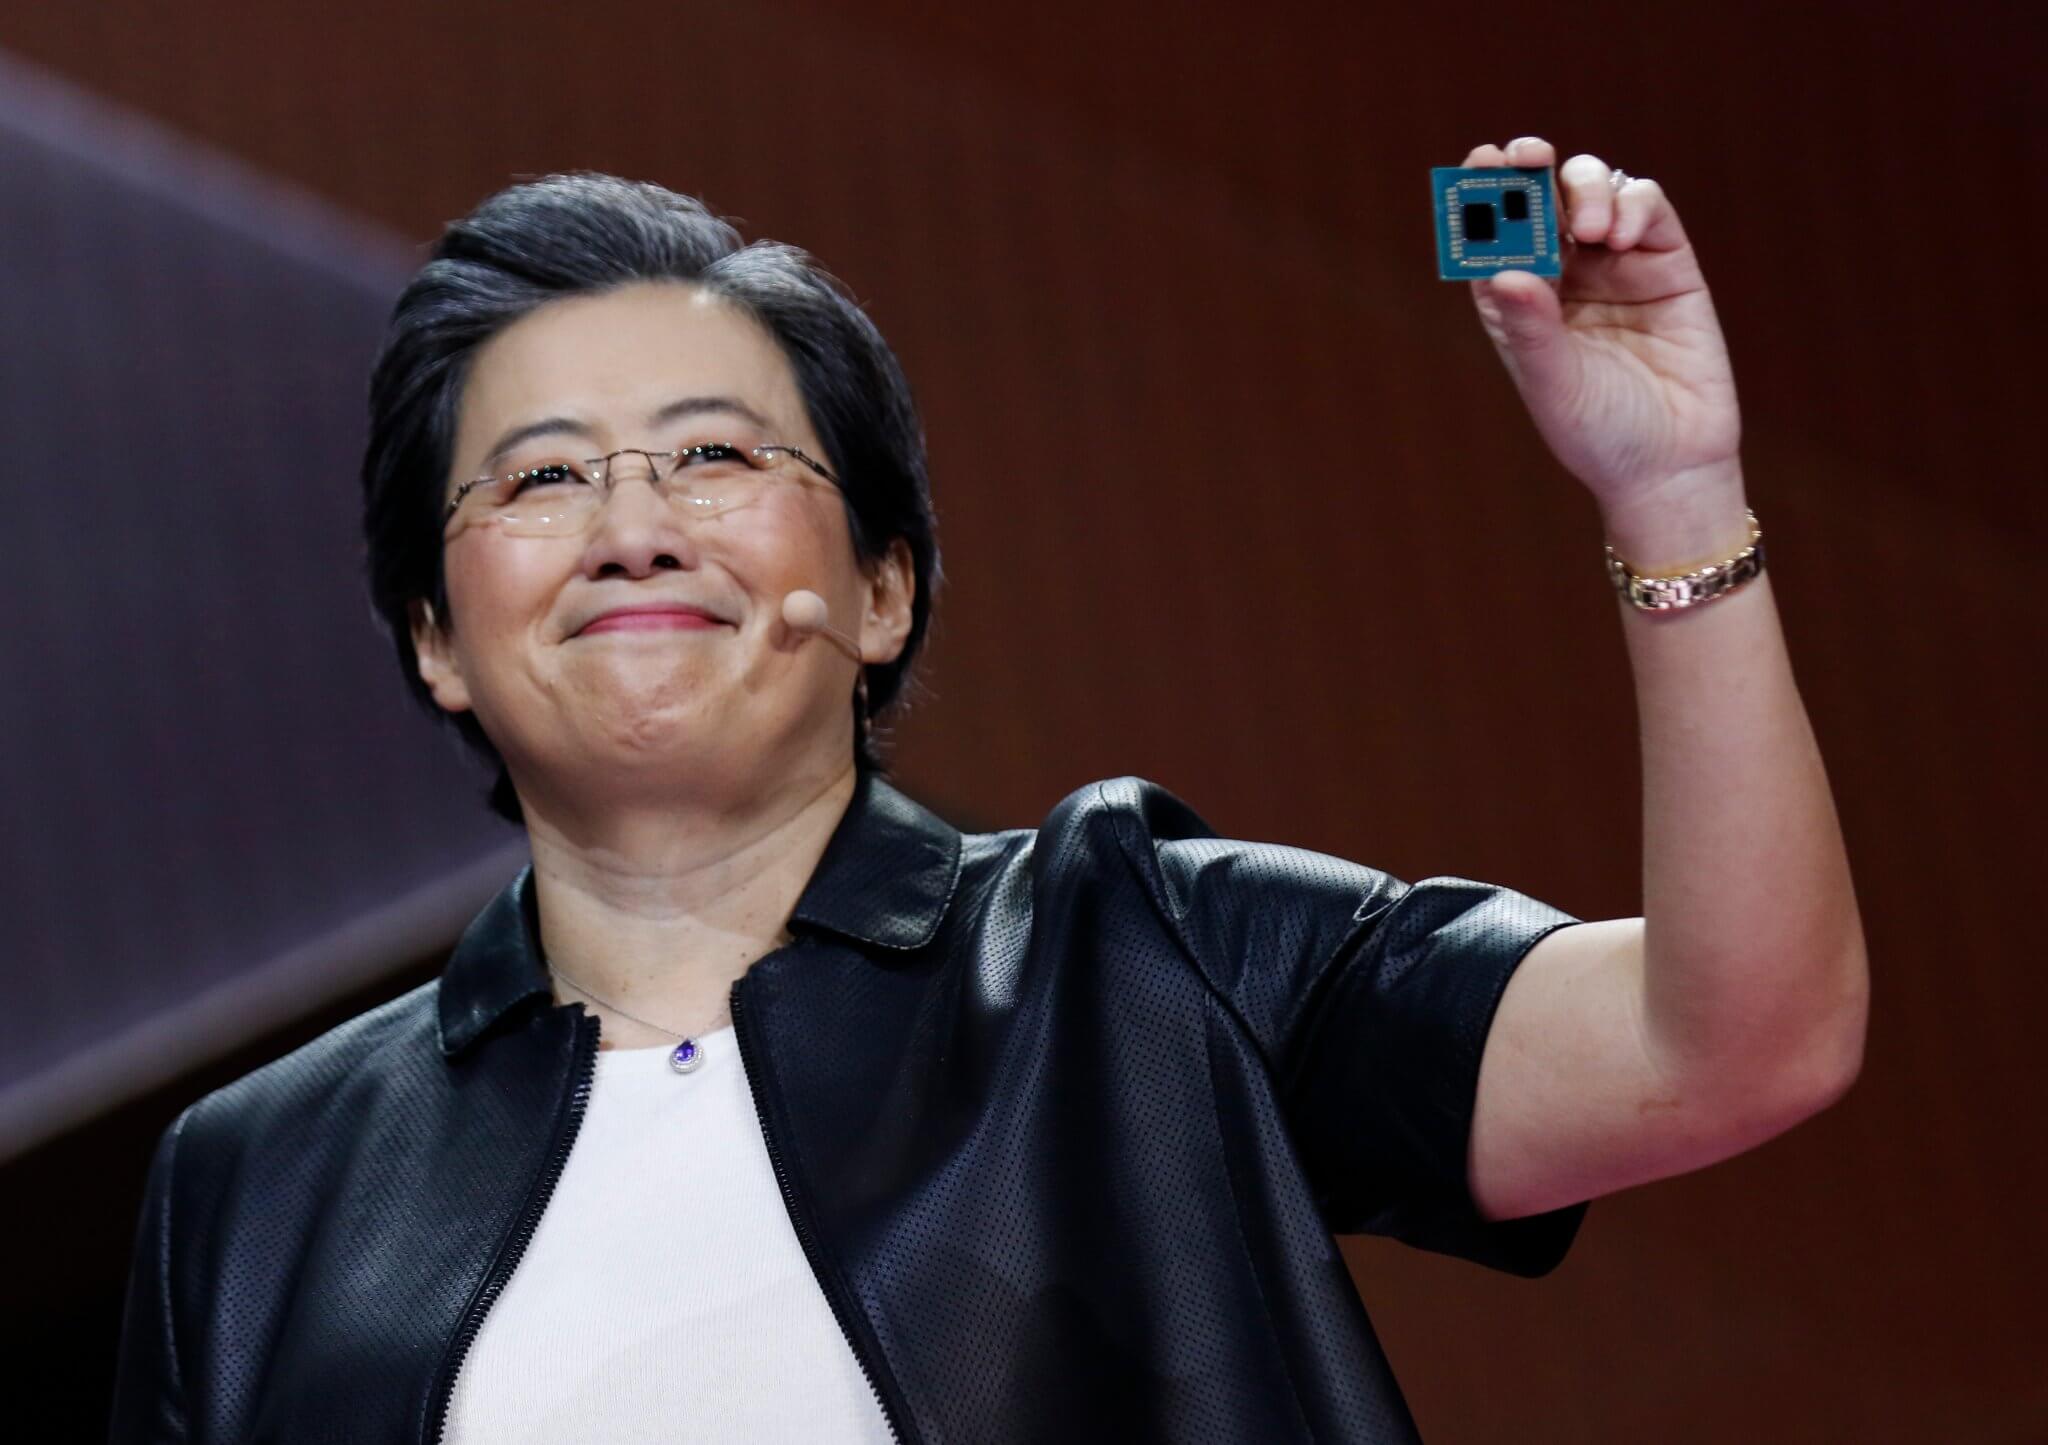 AMD escribe un blog sobre 55 años de innovación en la empresa y menciona «IA» 23 veces